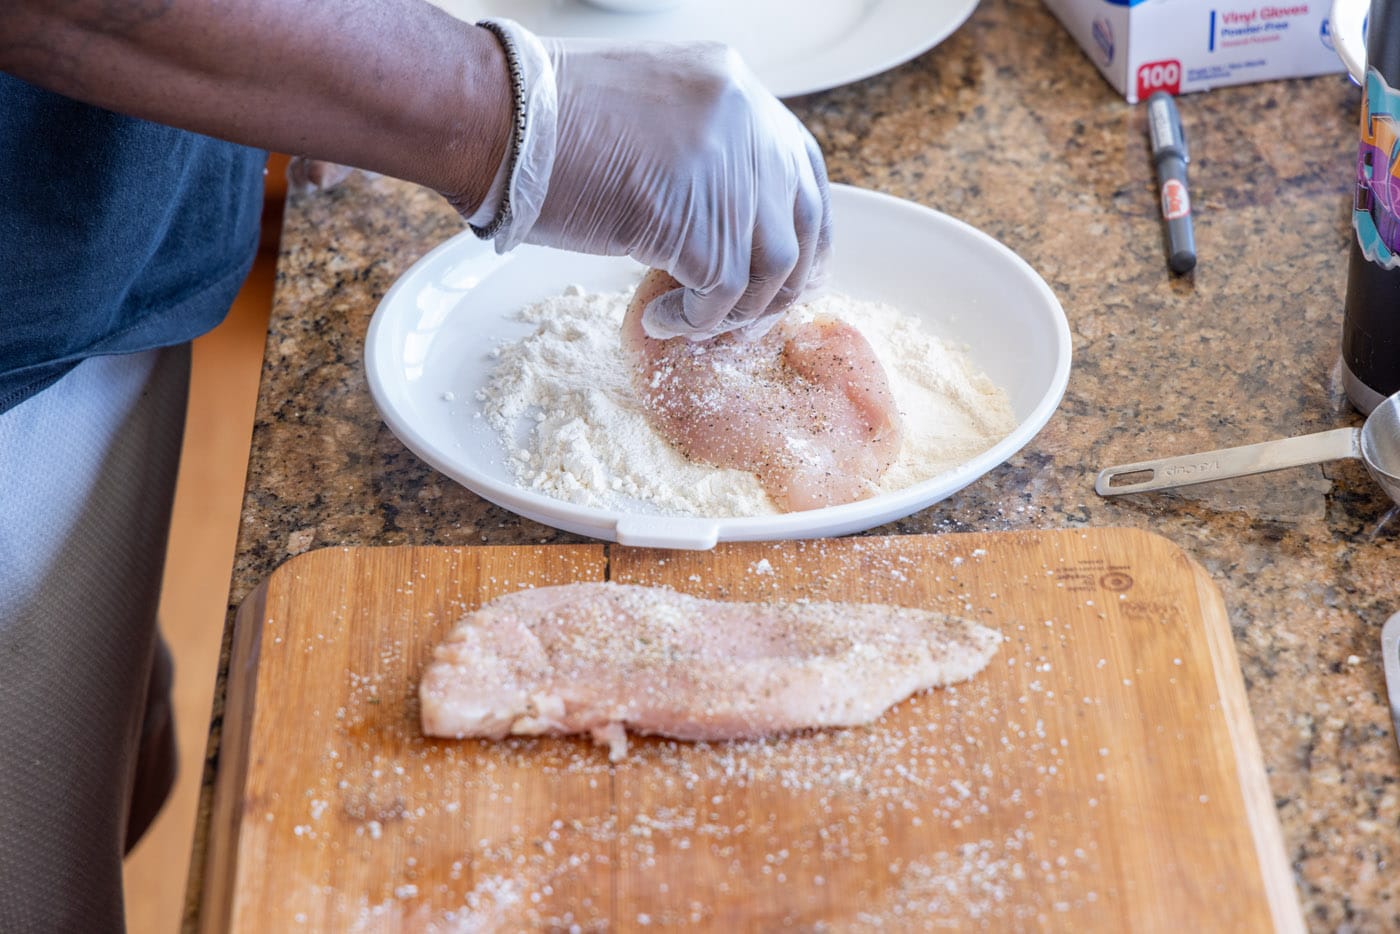 dredging chicken cutlets in flour